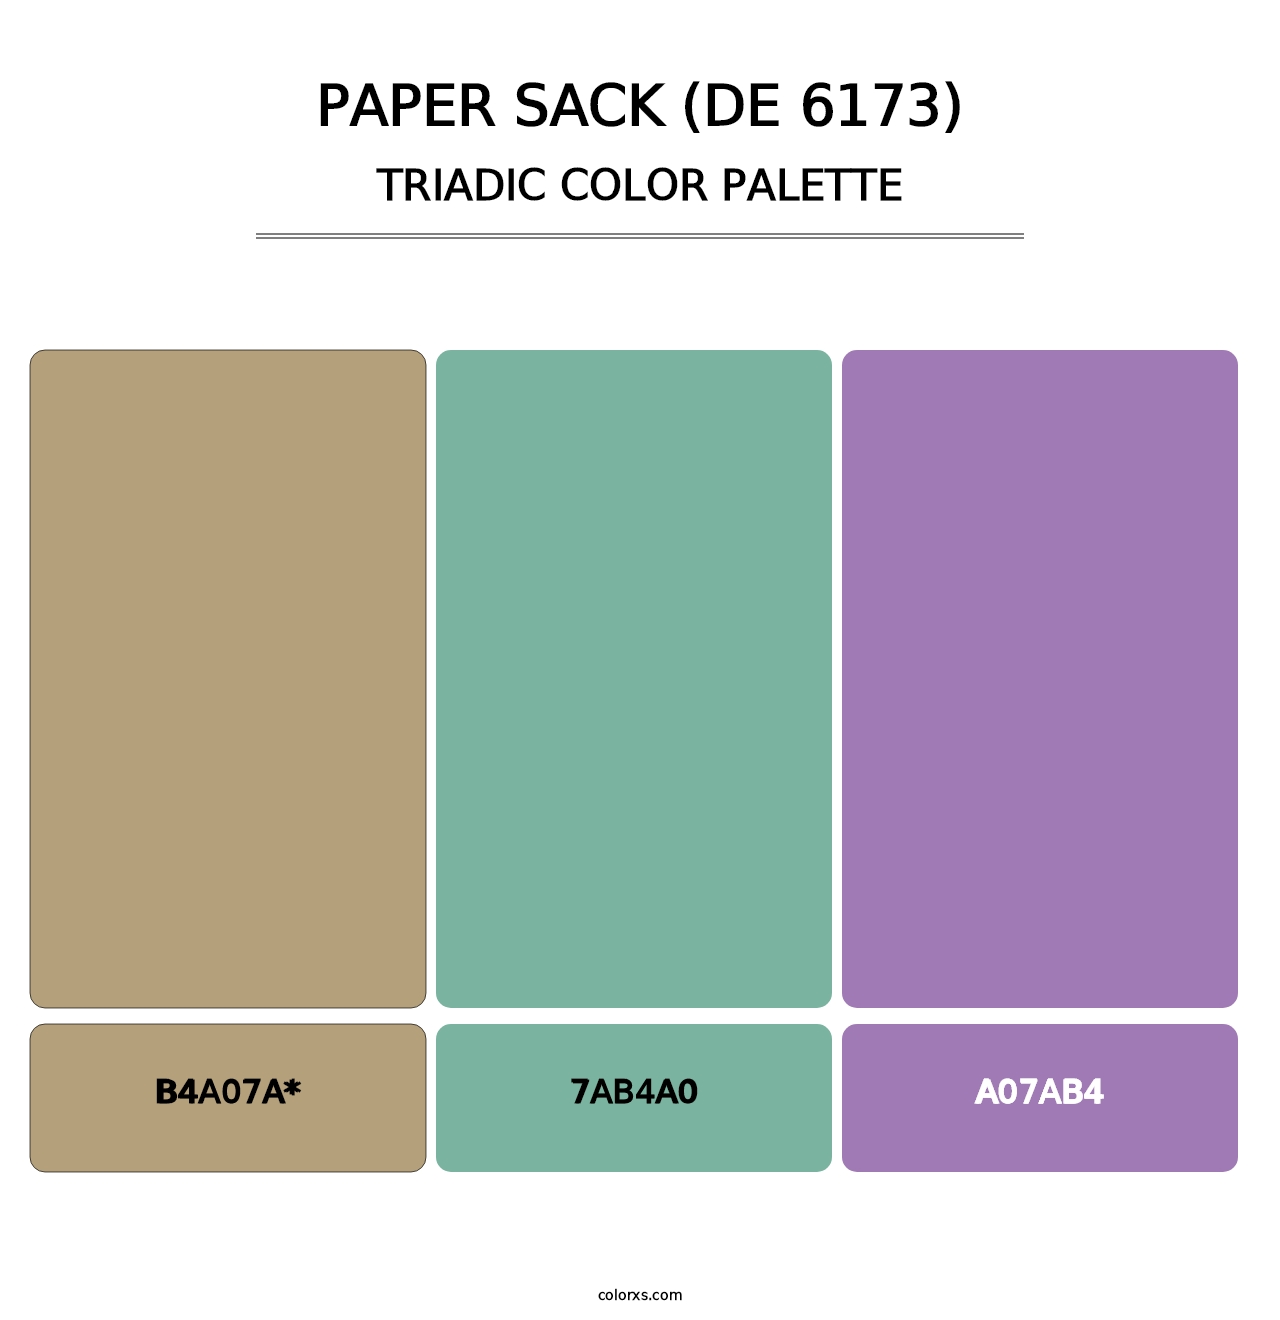 Paper Sack (DE 6173) - Triadic Color Palette